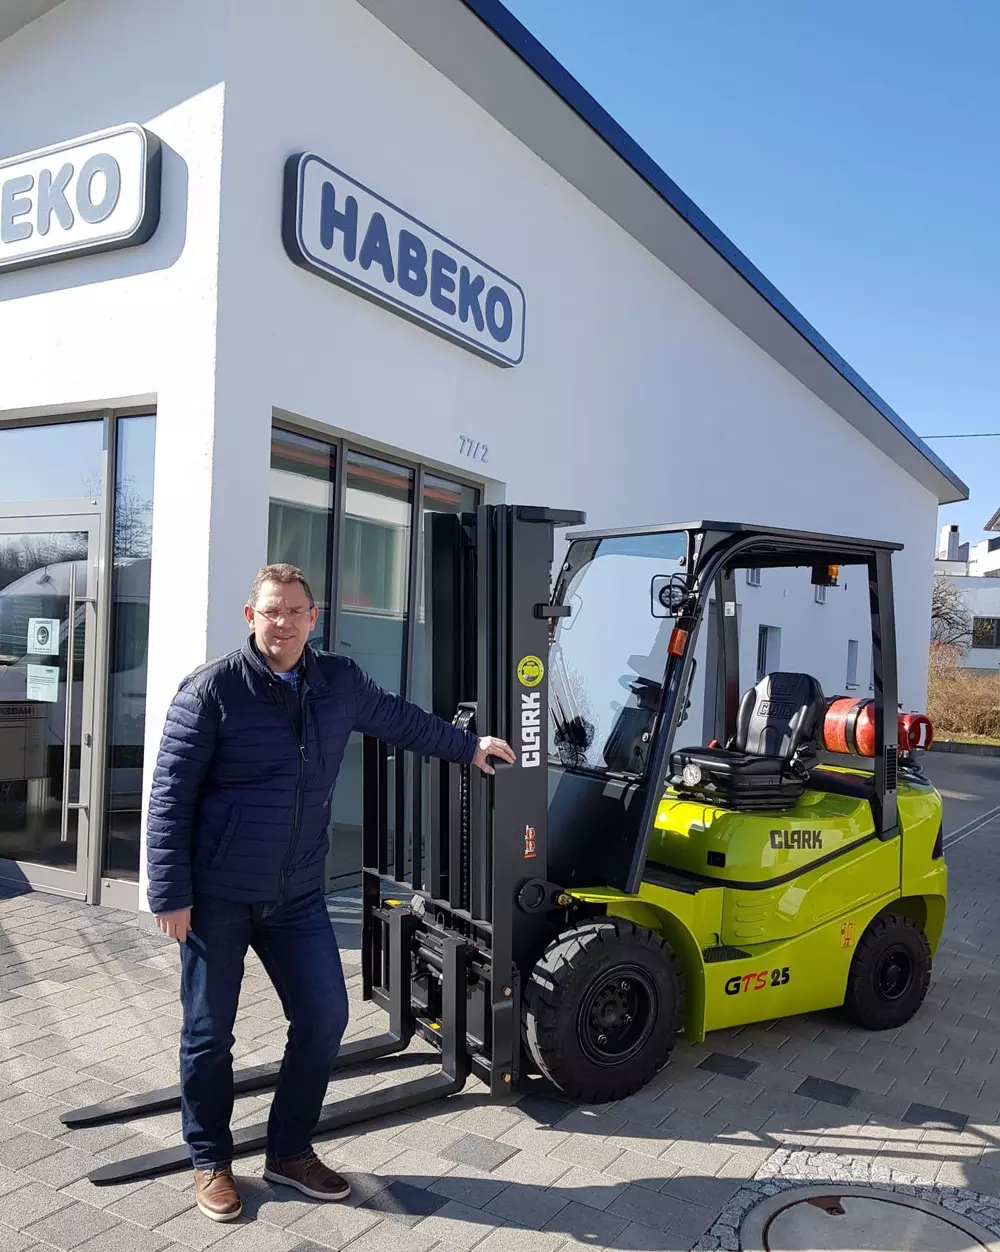 22 mars 2022 - Habeko est le nouveau partenaire de distribution de Clark dans le Bade-Wurtemberg